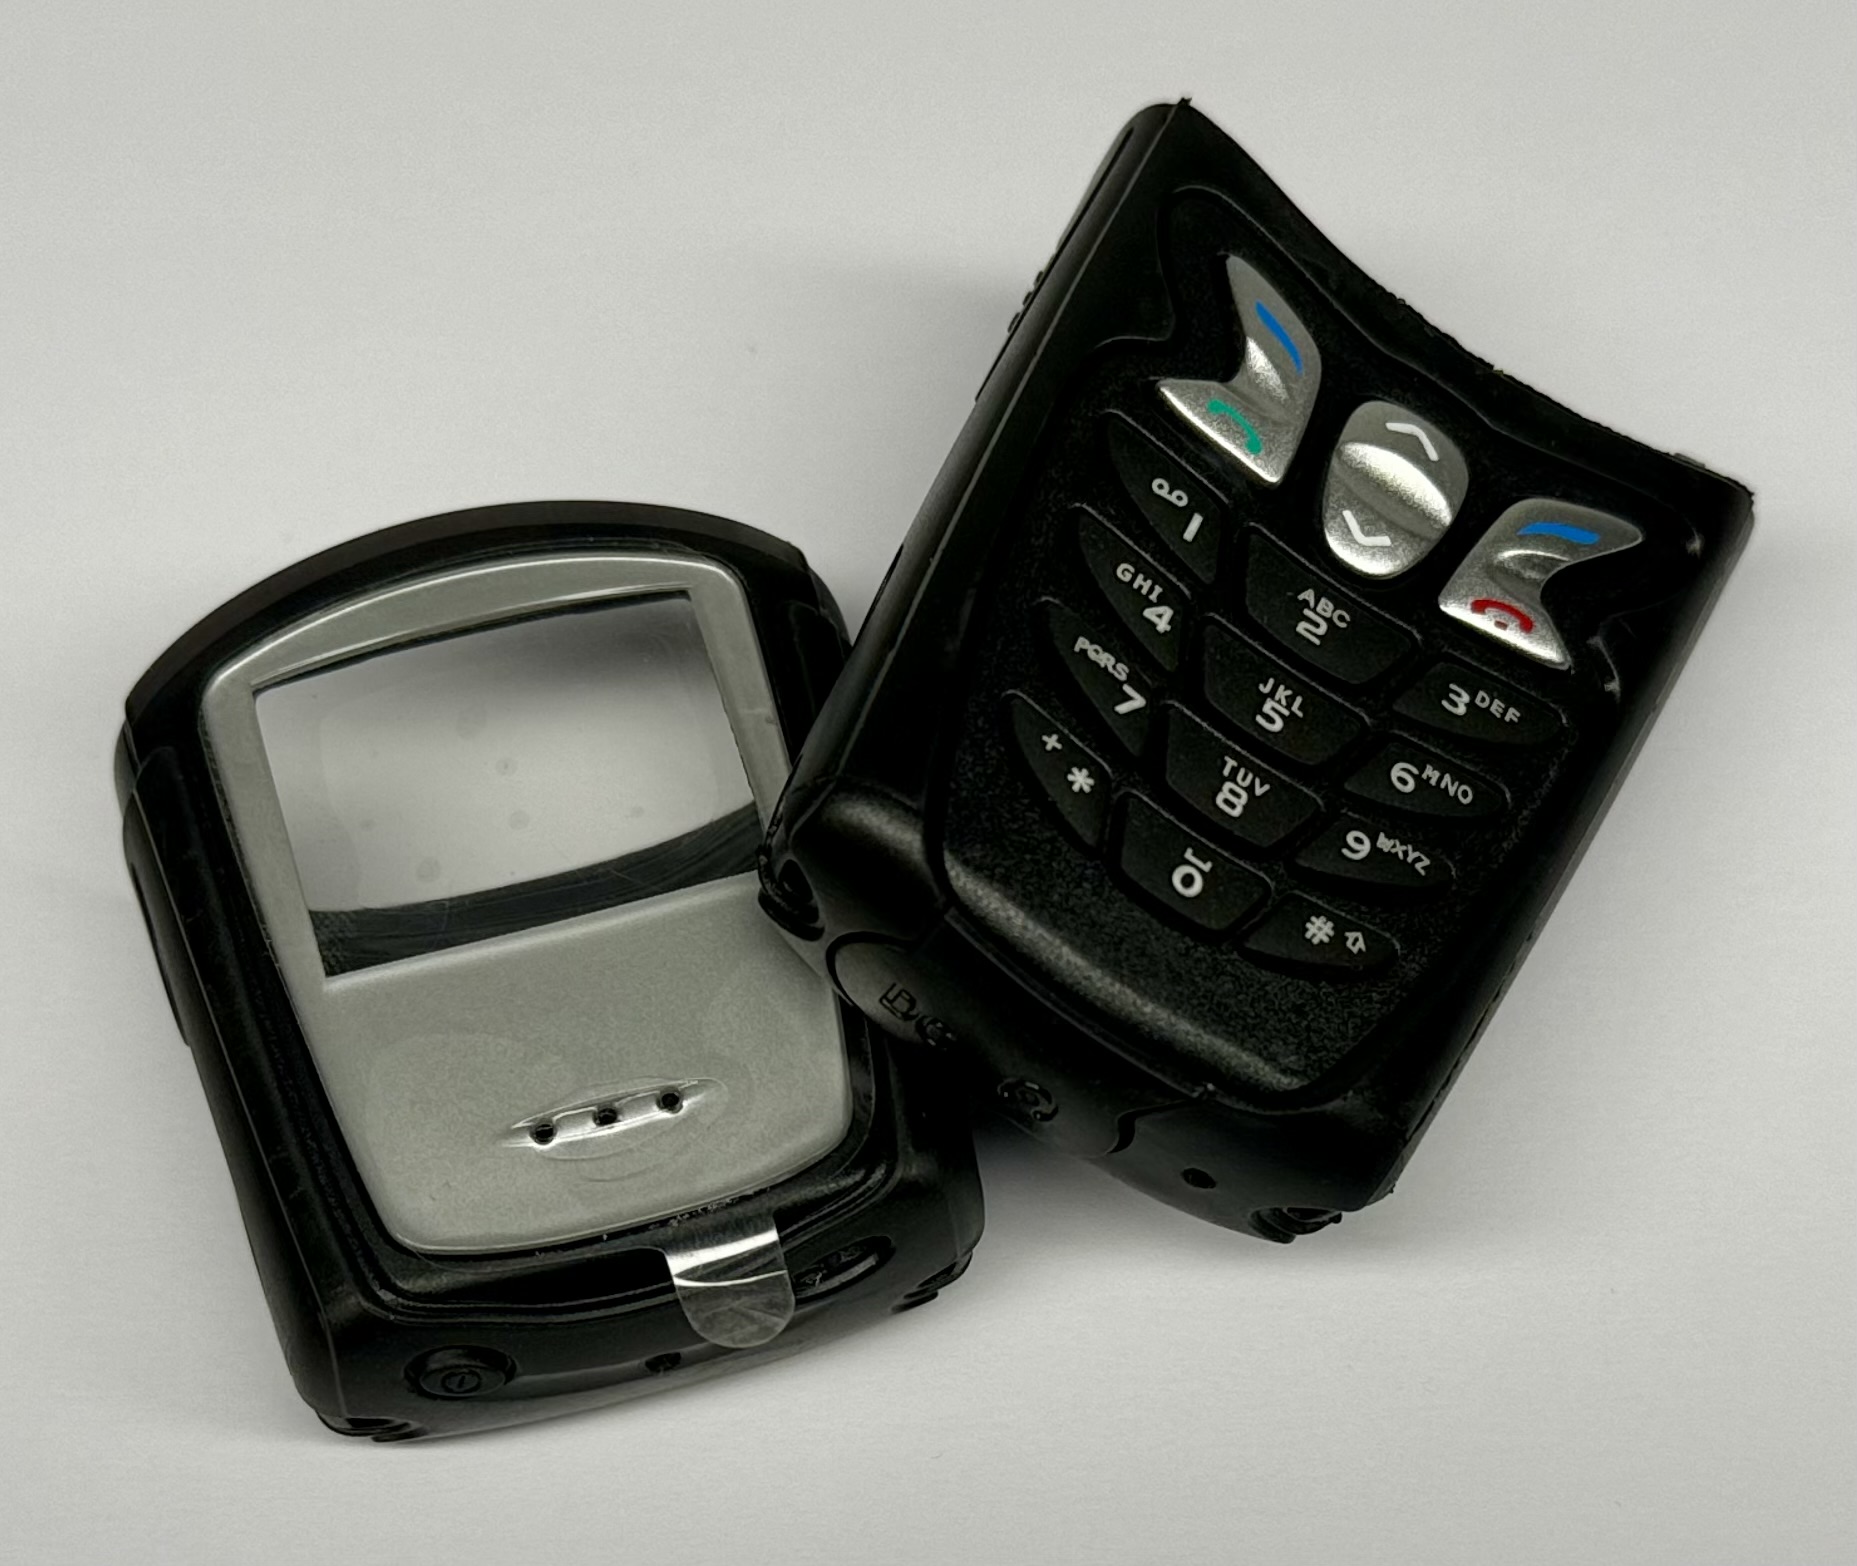 Nokia 5210 Outdoor A/B-Shell Oberschale Gehäuse Tastatur Cover Housing Keypad